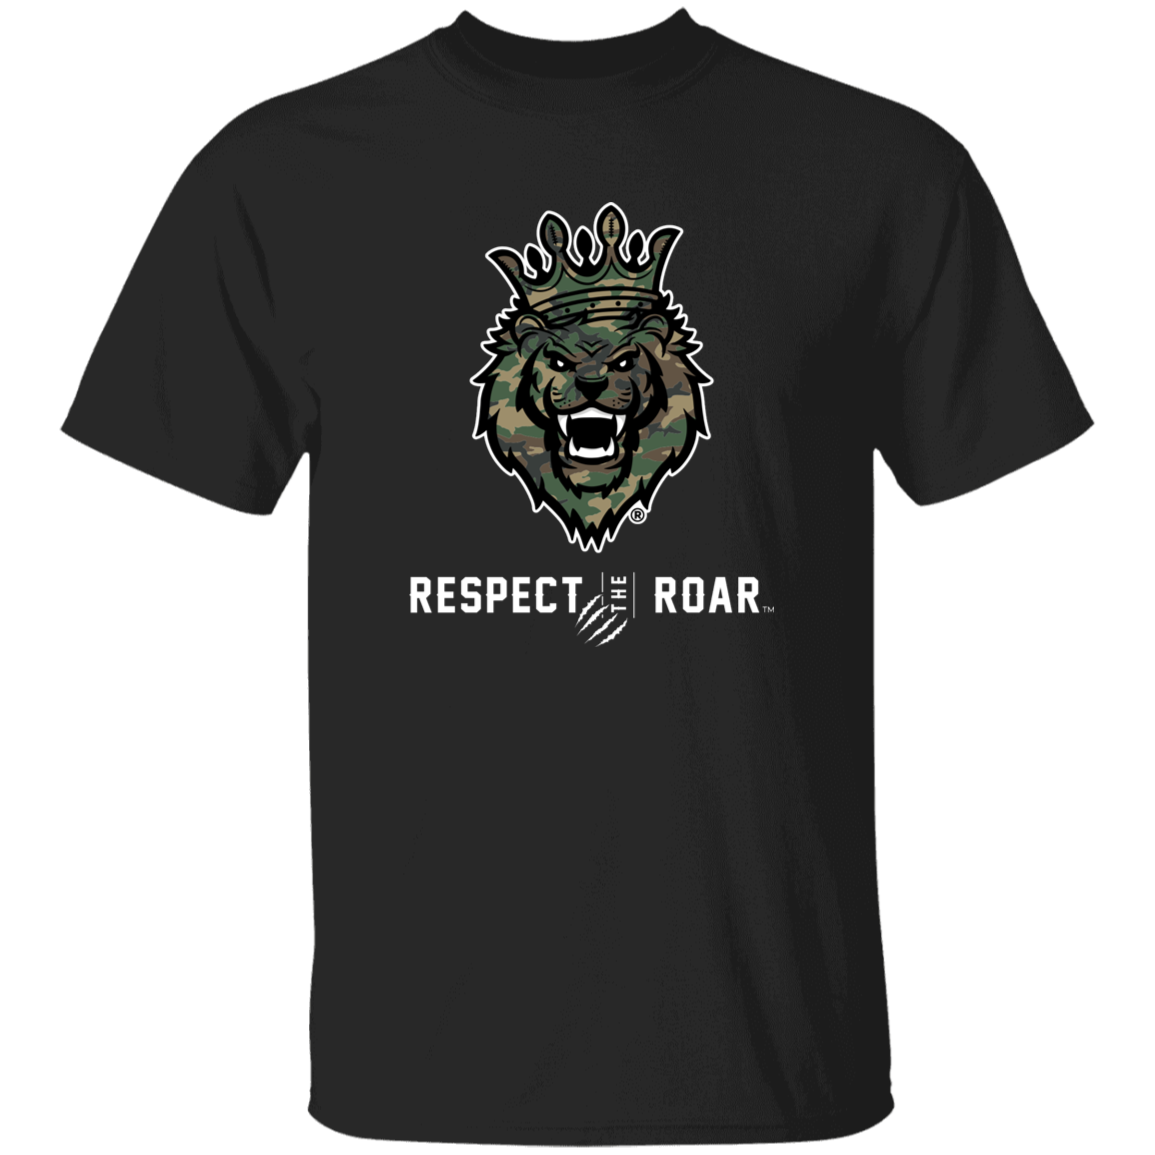 Respect The Roar (Green) - G500 5.3 oz. T-Shirt